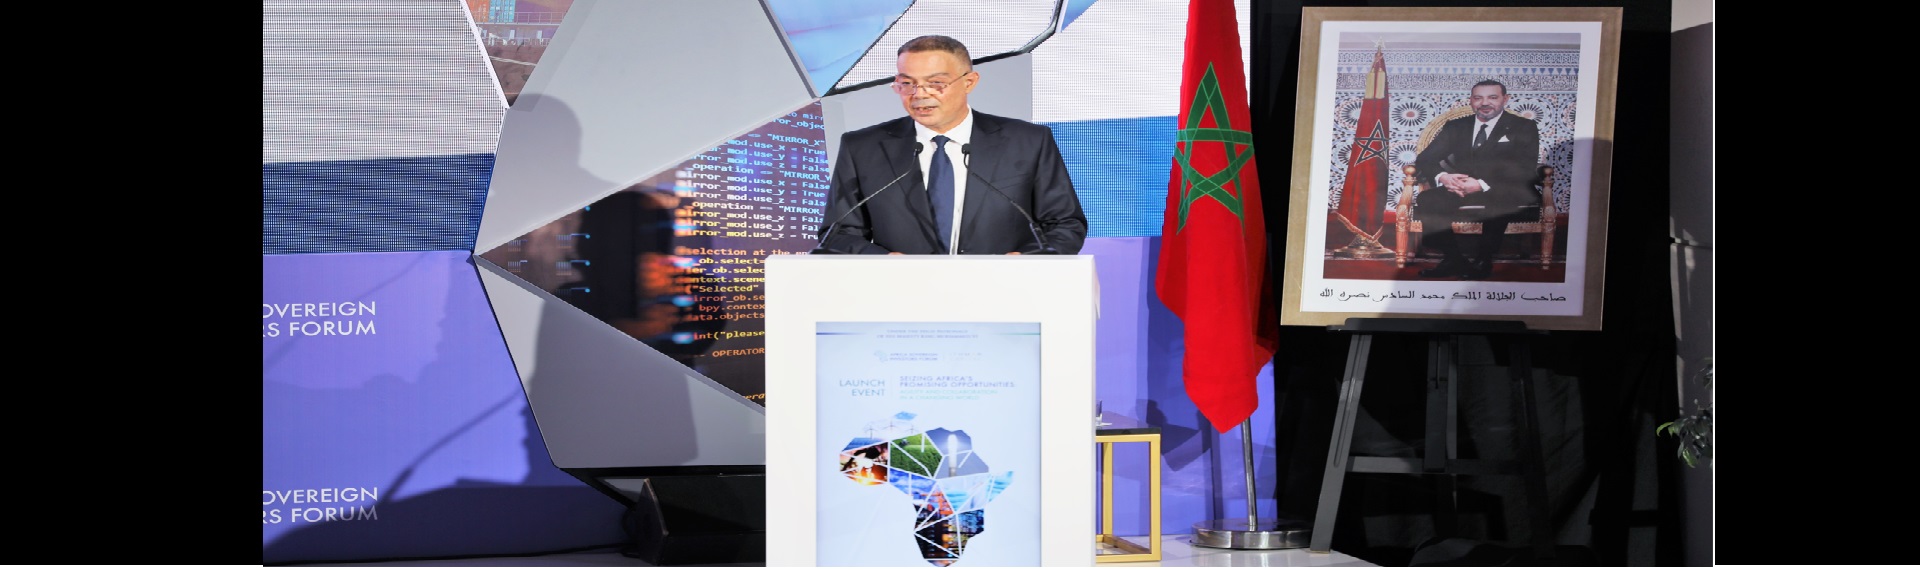 Lanzamiento de los trabajos del Foro Africano de Inversores Soberanos (ASIF): El Sr. Fouzi LEKJAA da lectura al Mensaje Real dirigido por Su Majestad el Rey Mohammed VI a los participantes